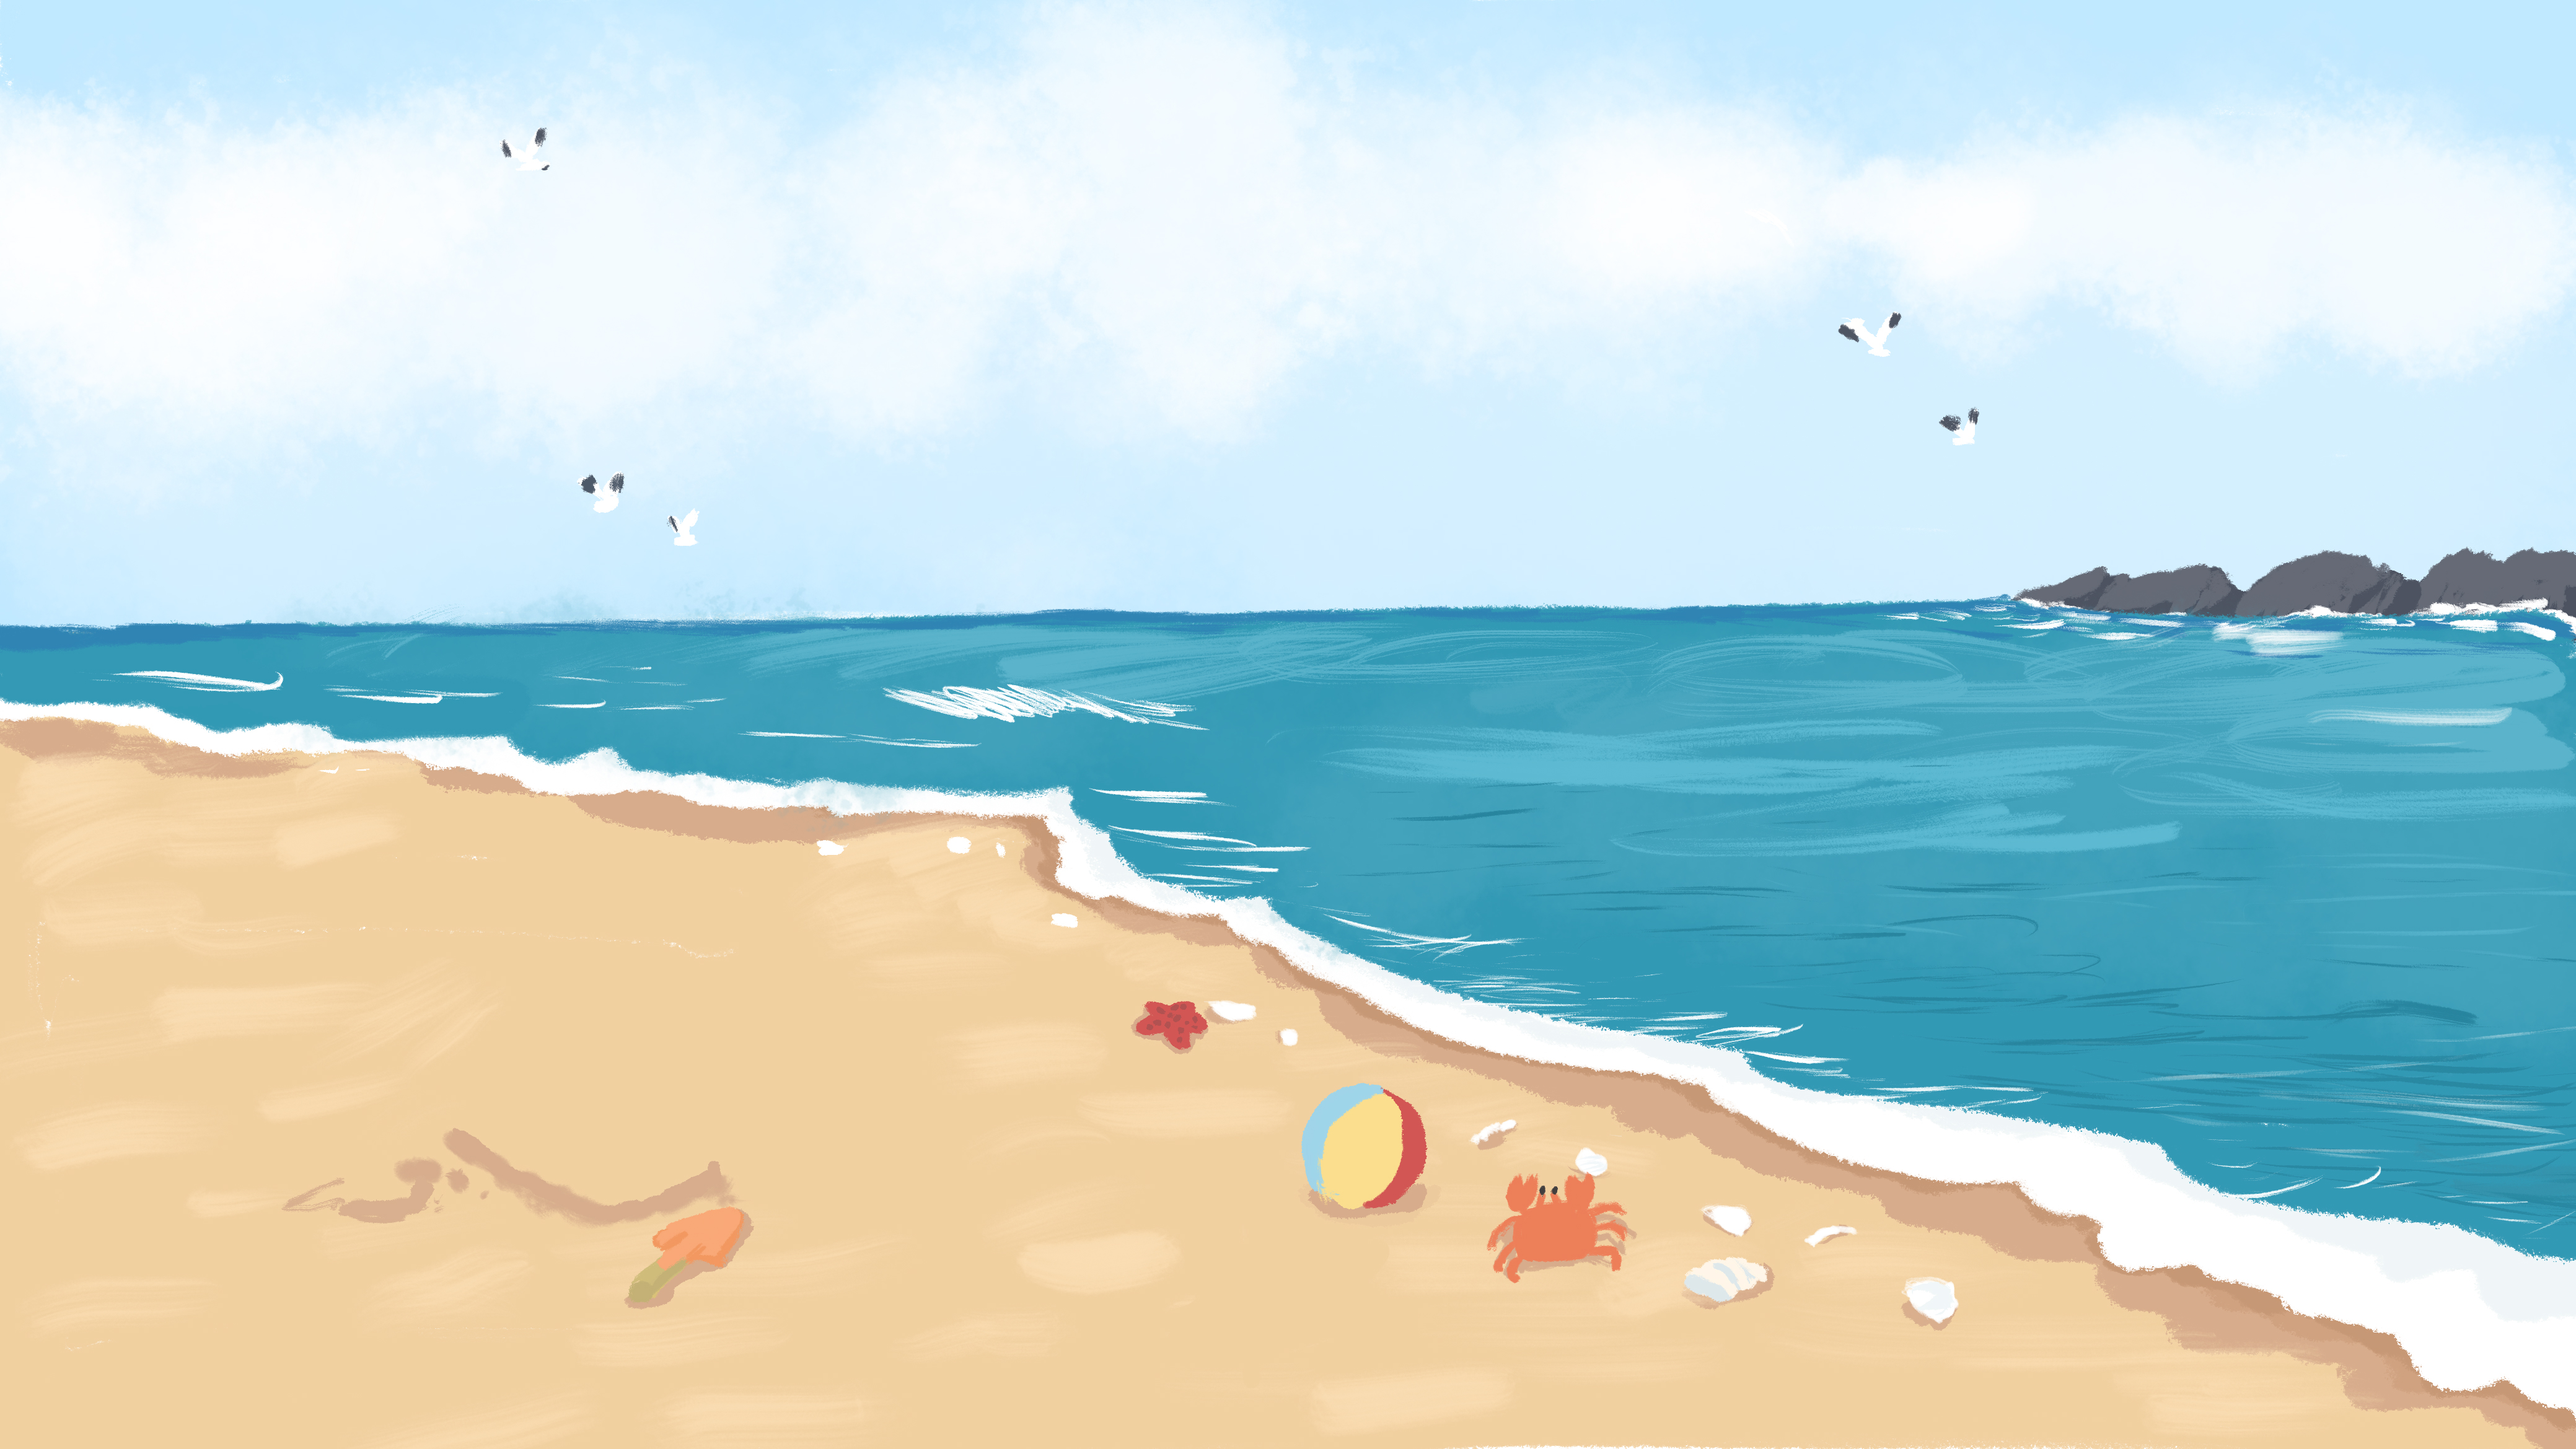 Пляж иллюстрация